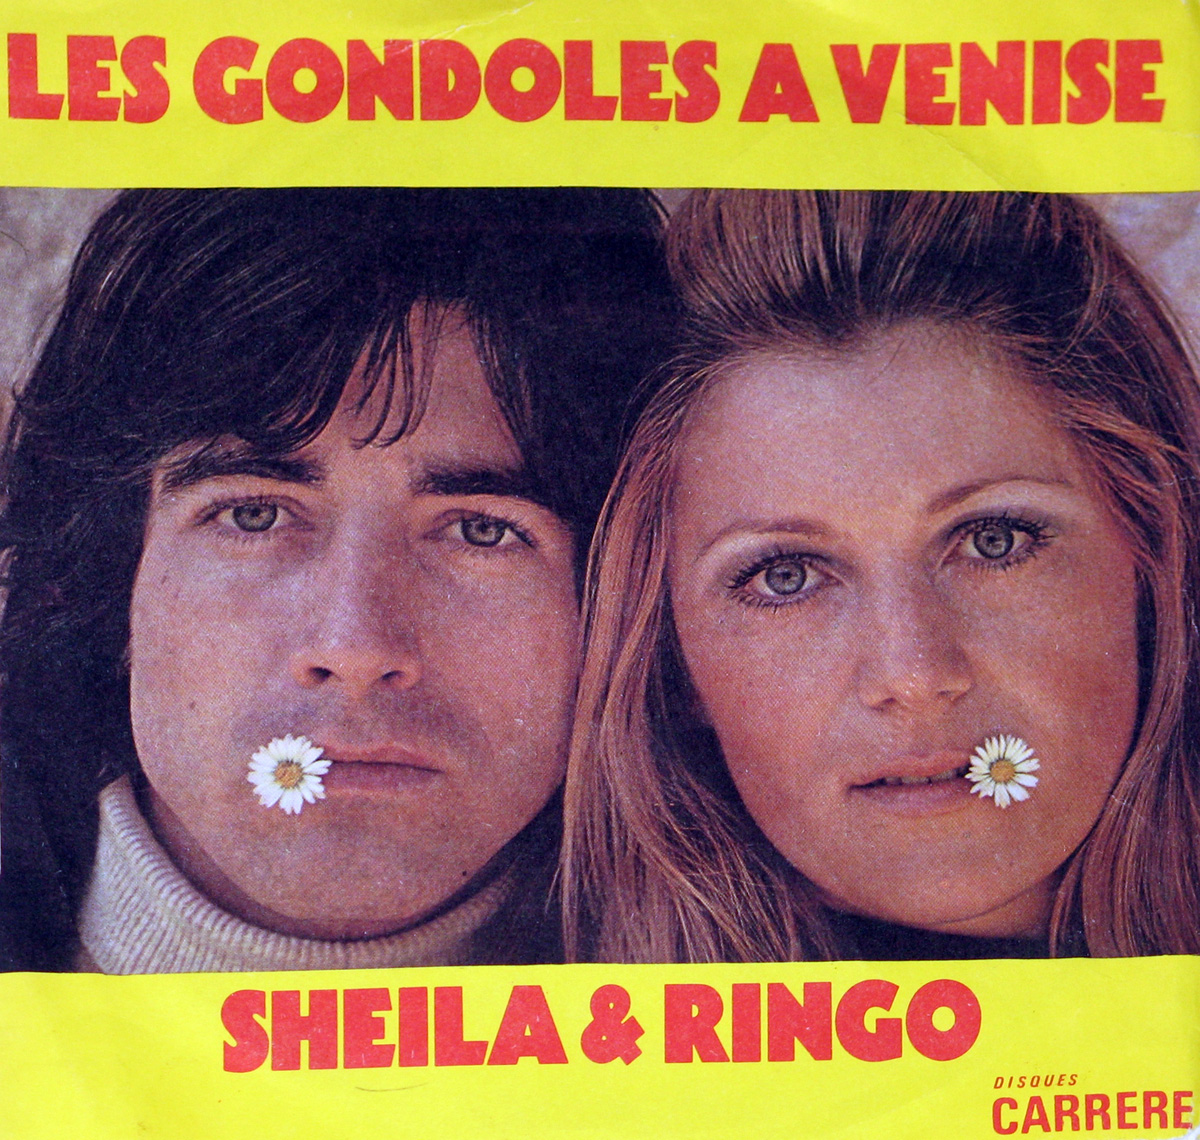 large photo of the album front cover of: Sheila & Ringo - Les Gondoles a Venise 